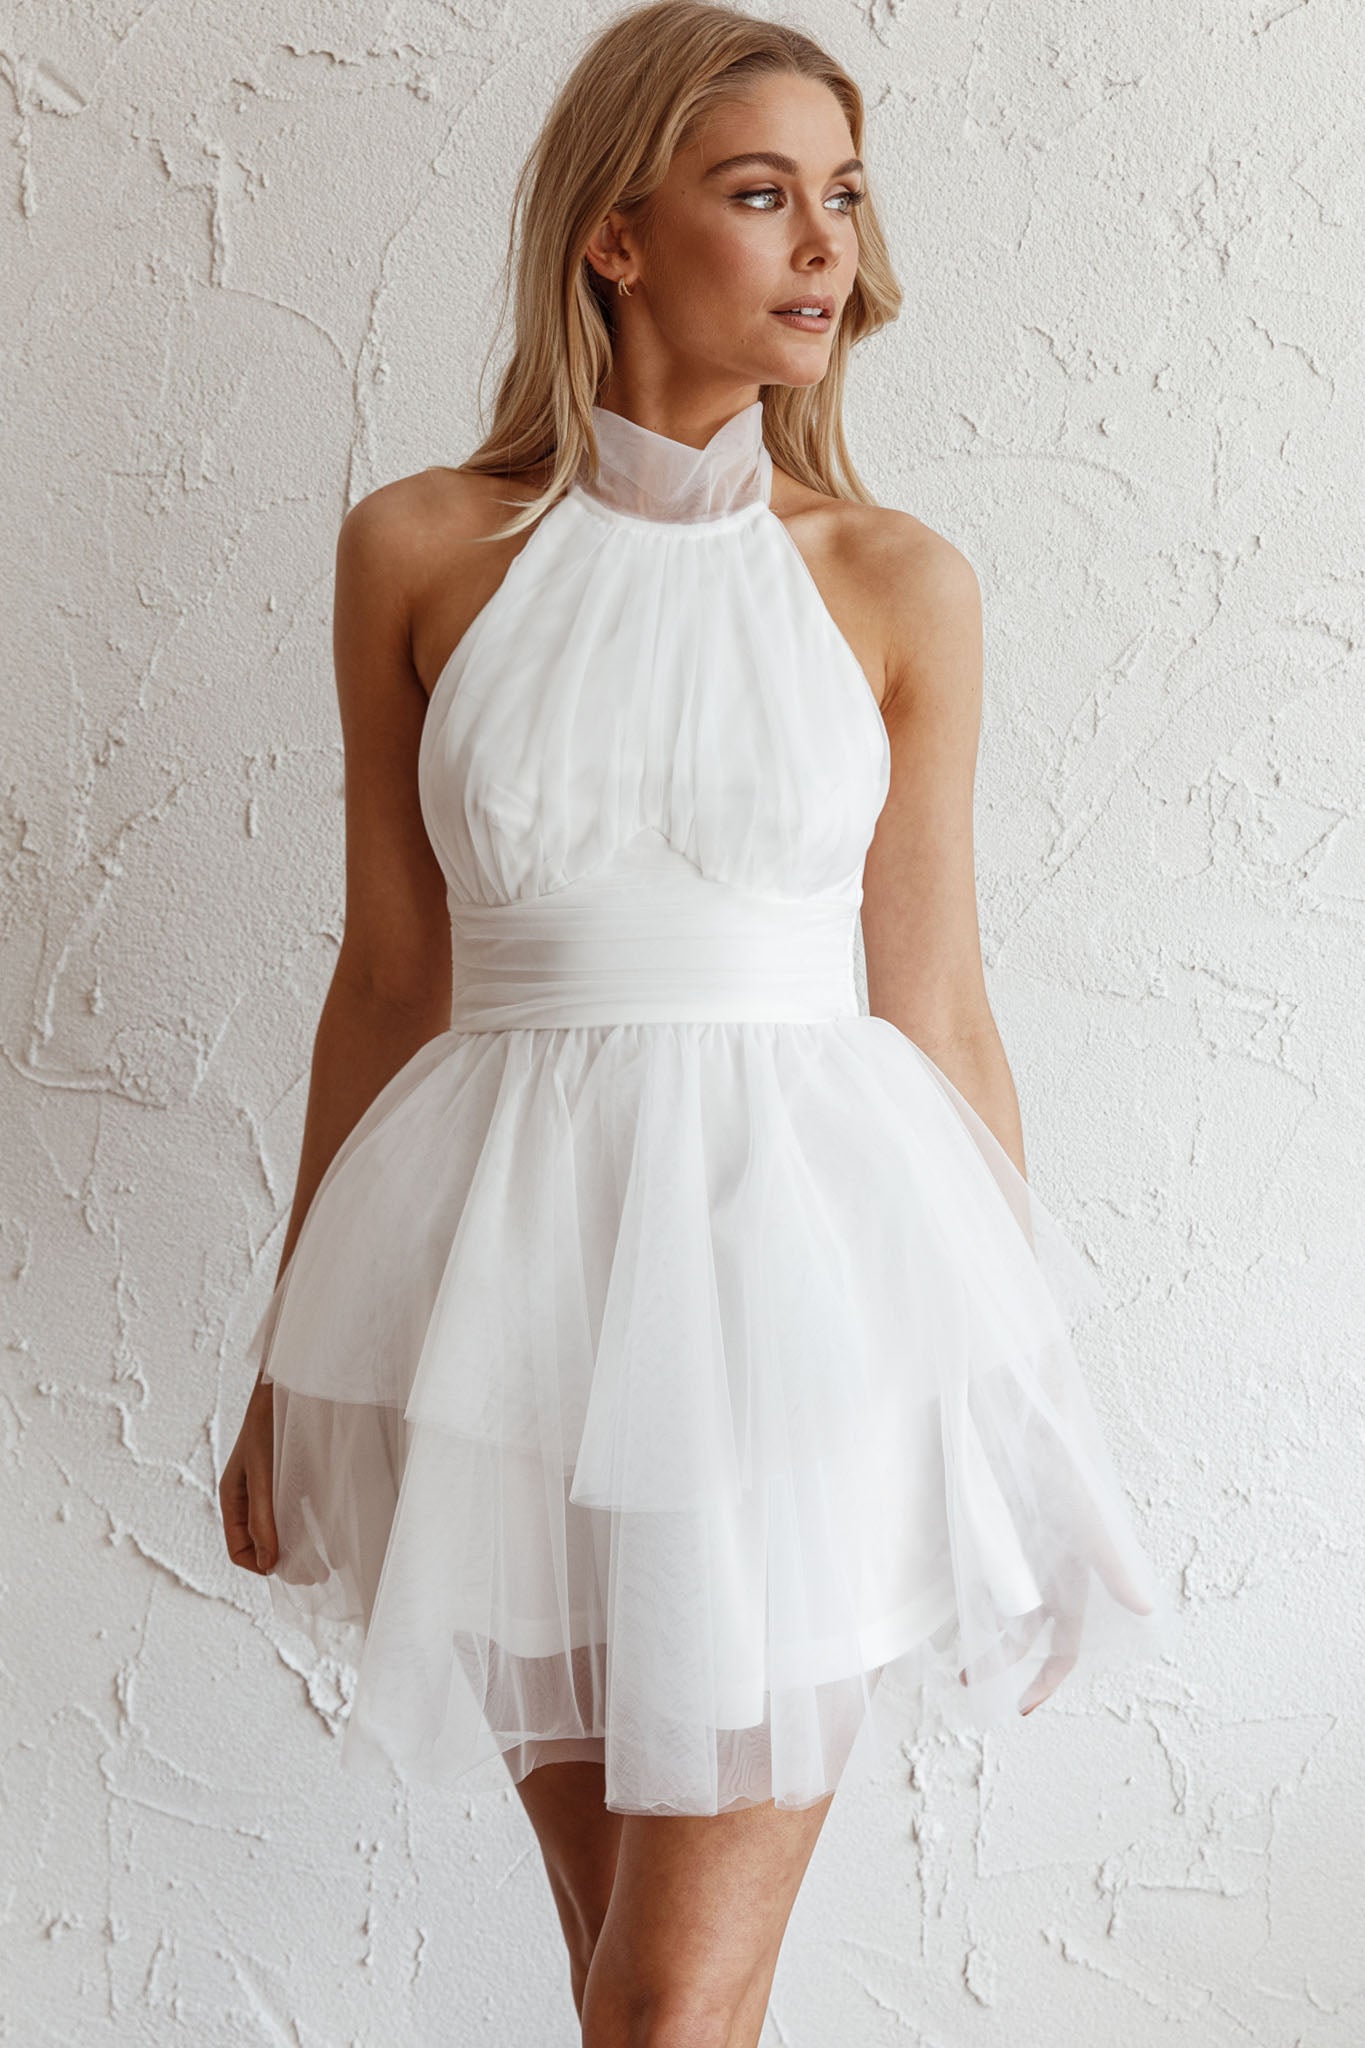  White Halter Dress